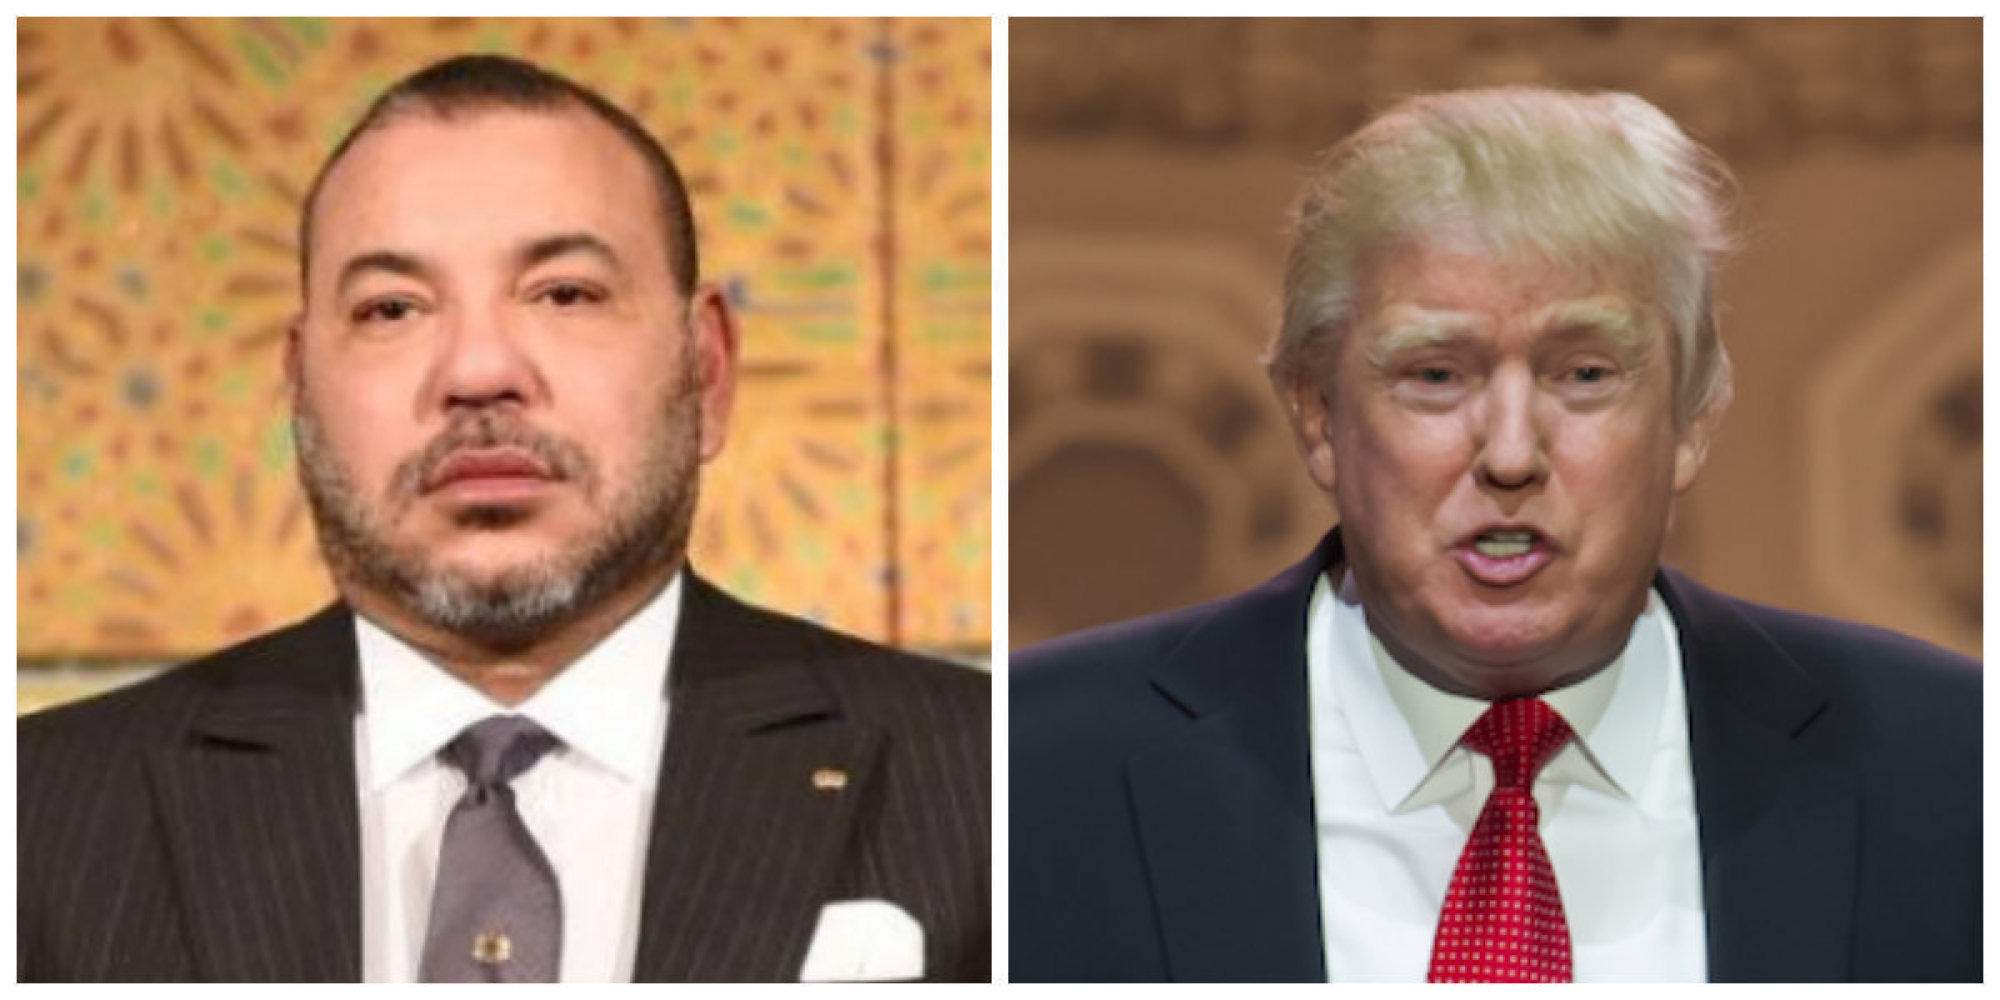 President Trump Lauds Leadership of King Mohammed VI in Muslim World